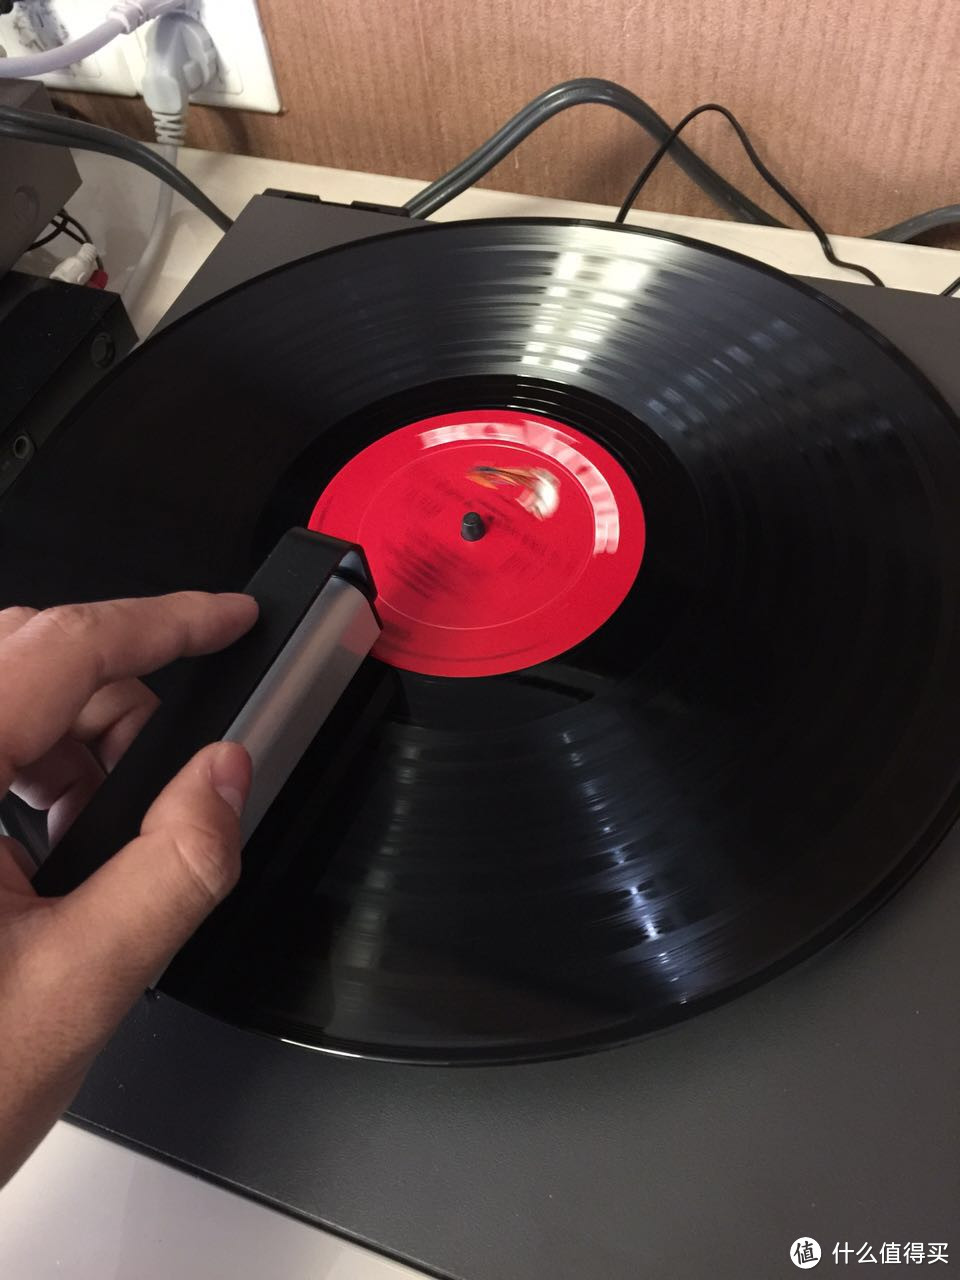 上个世纪的音乐记忆：爱上黑胶唱片